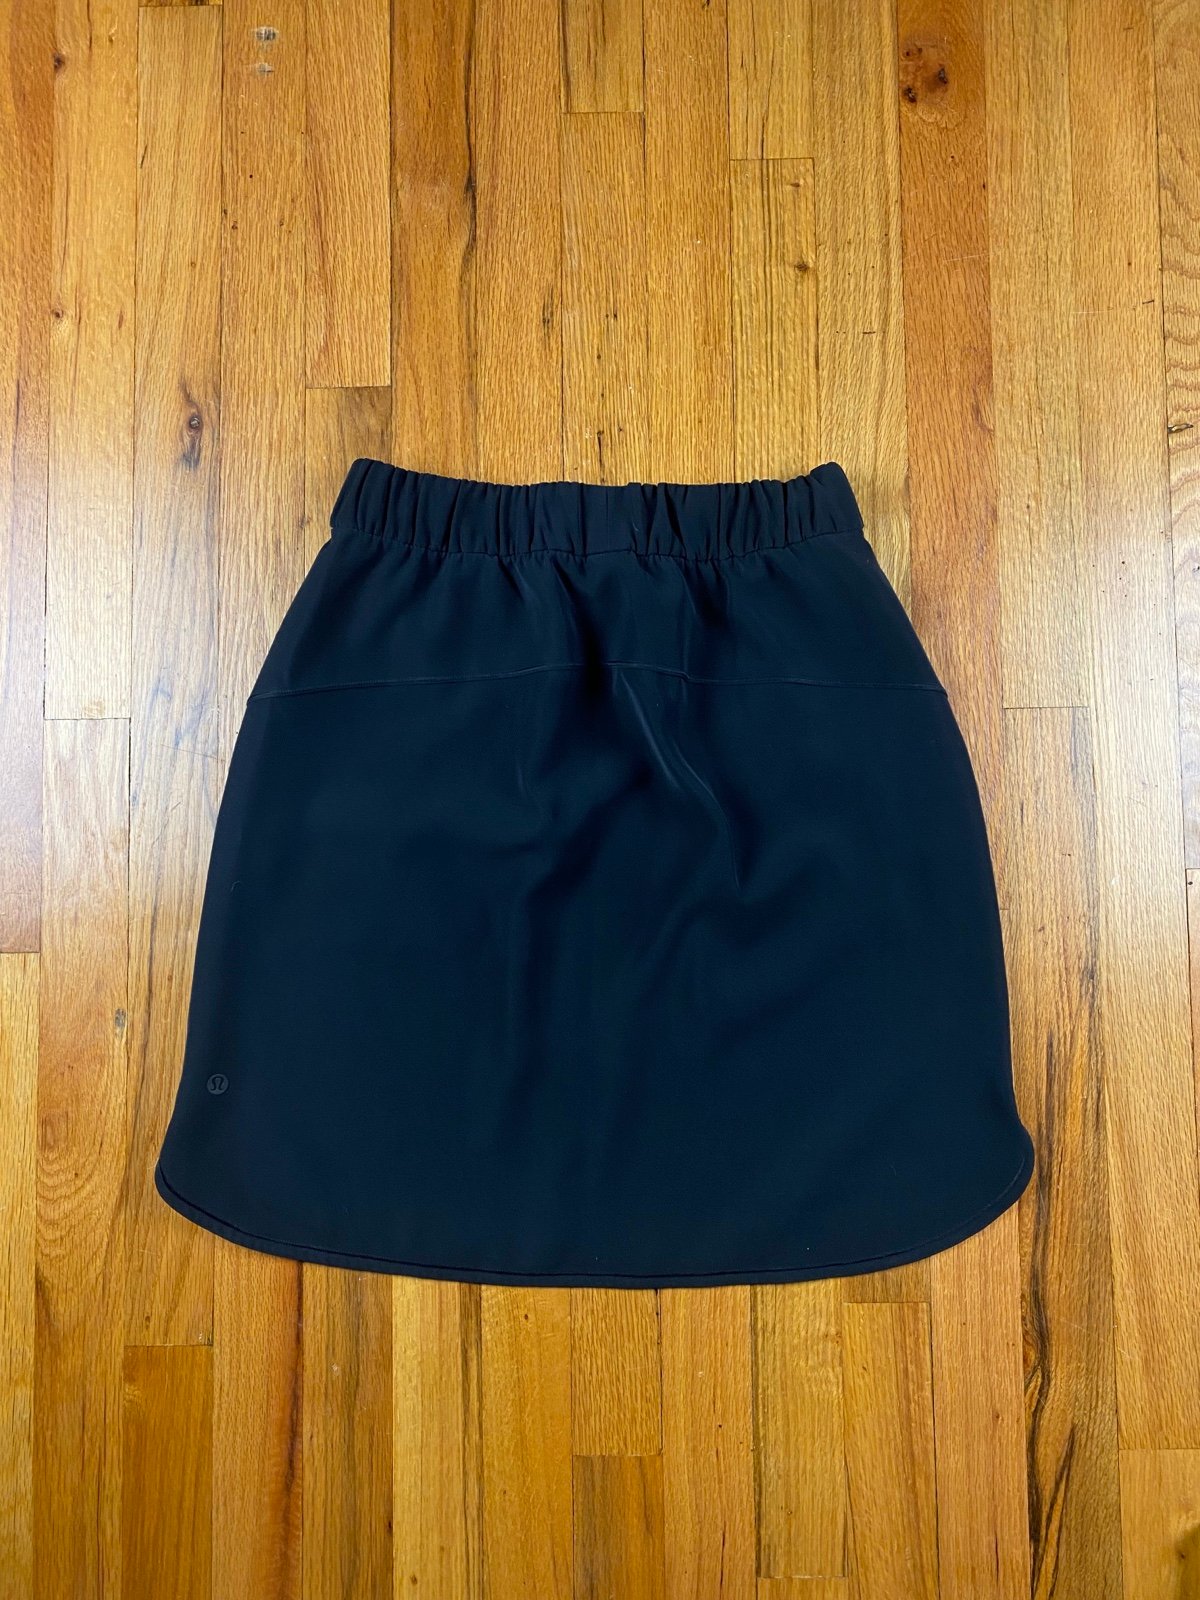 The Best Seller Lululemon On the Fly Skirt Woven Size 8 Black hO1lleg3N Cheap